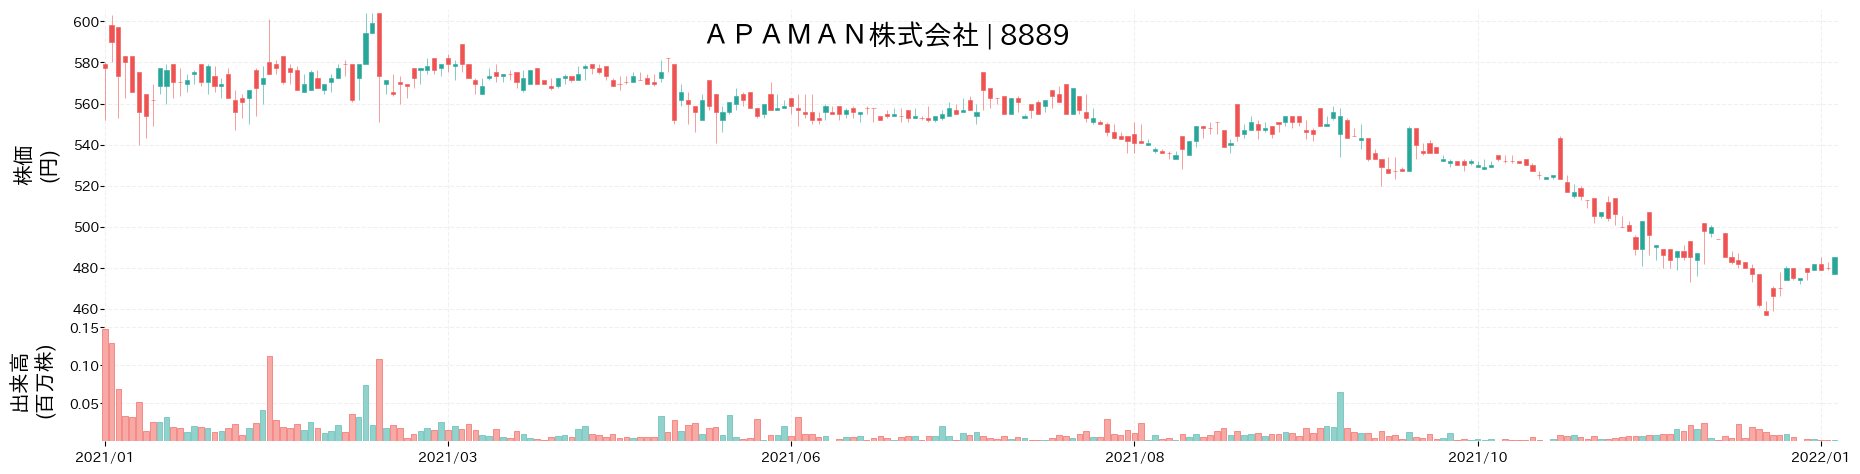 APAMANの株価推移(2021)